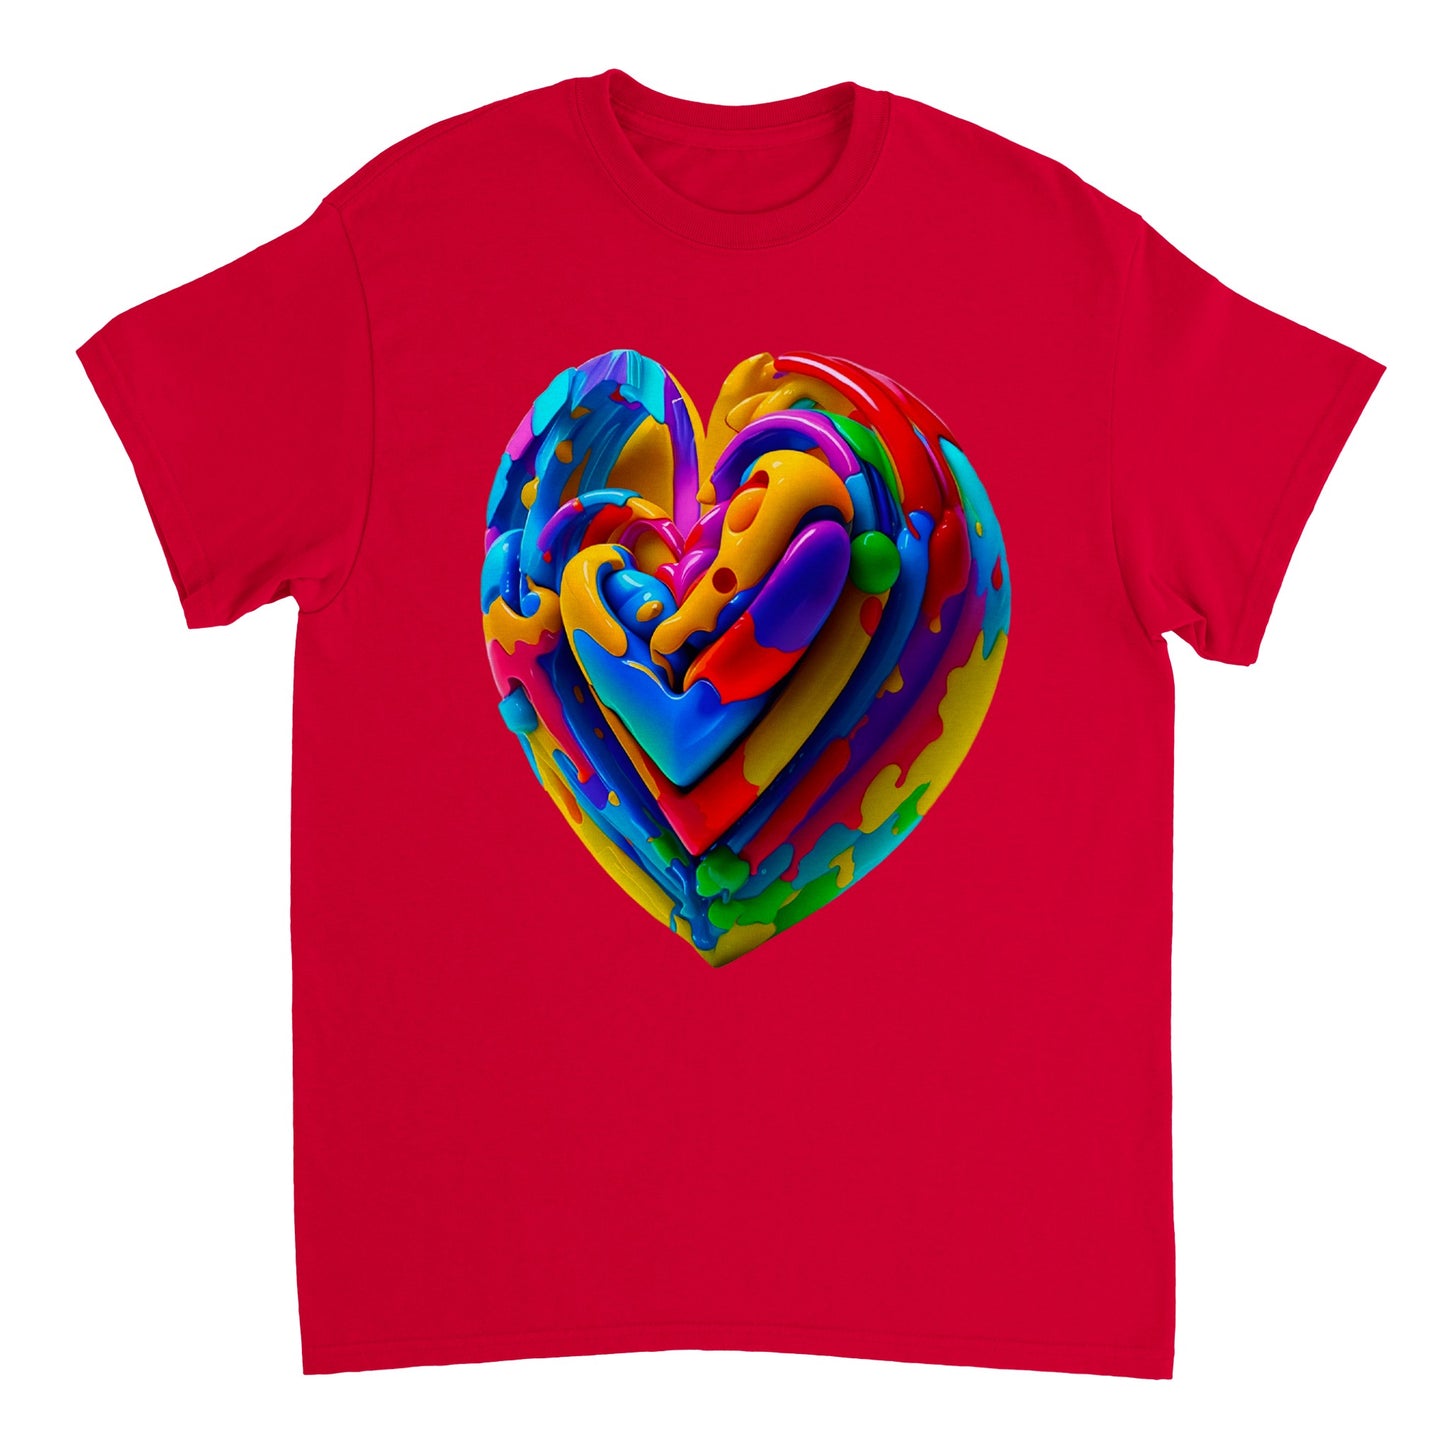 Love Heart - Heavyweight Unisex Crewneck T-shirt 13